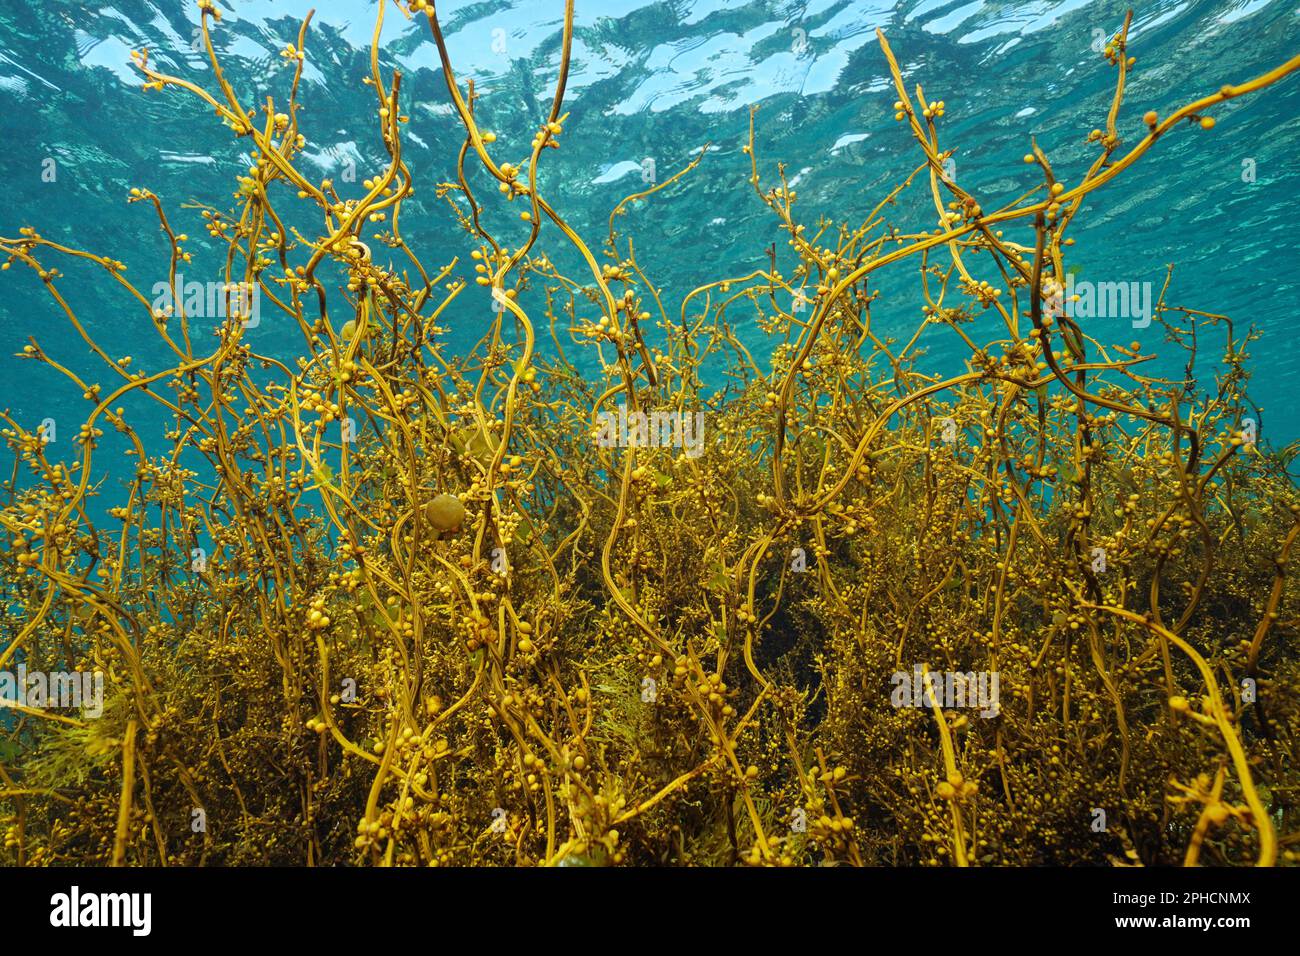 Japanische Wireweed-Algen unter Wasser, Sargassum muticum-Algen, Ostatlantik, Spanien Stockfoto